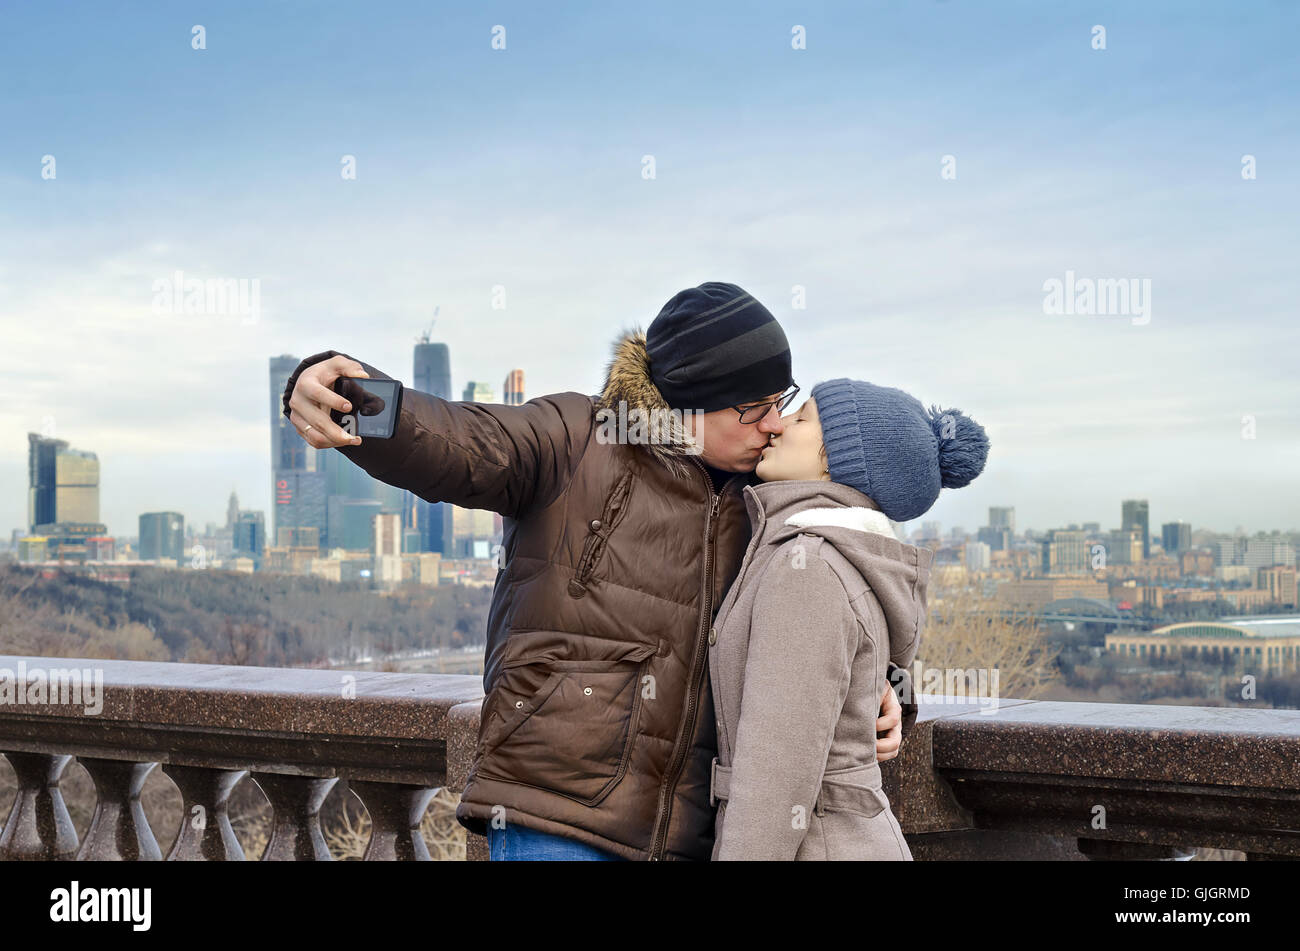 Moscou, Russia-February 07, 2016 : les amoureux sont photographiés sur le téléphone Banque D'Images